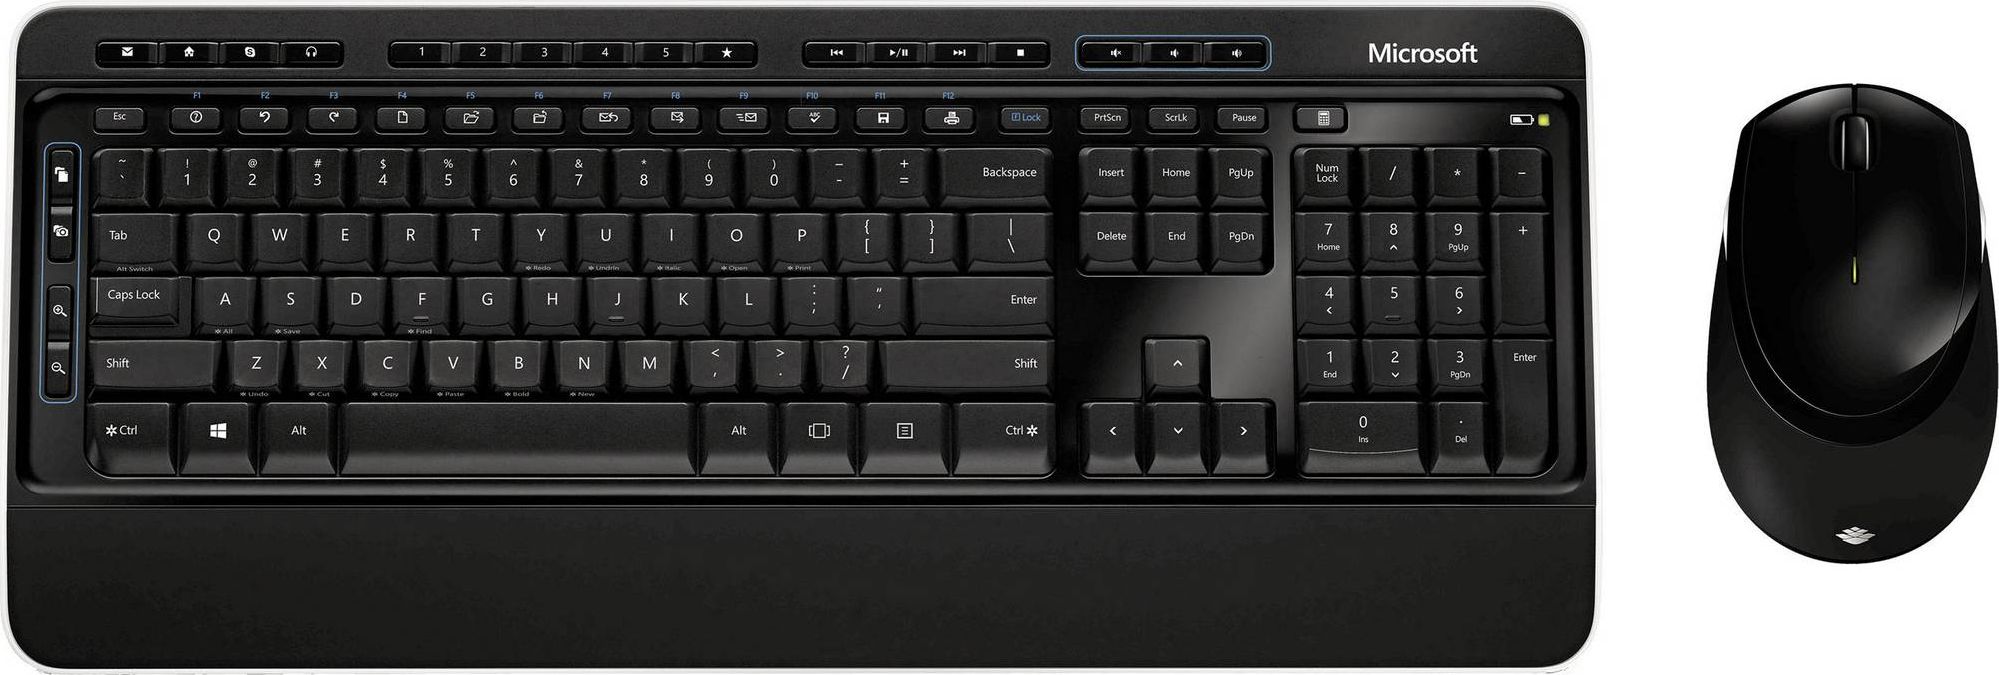 Microsoft Wireless Desktop 3050 QWERTZ klaviatūra